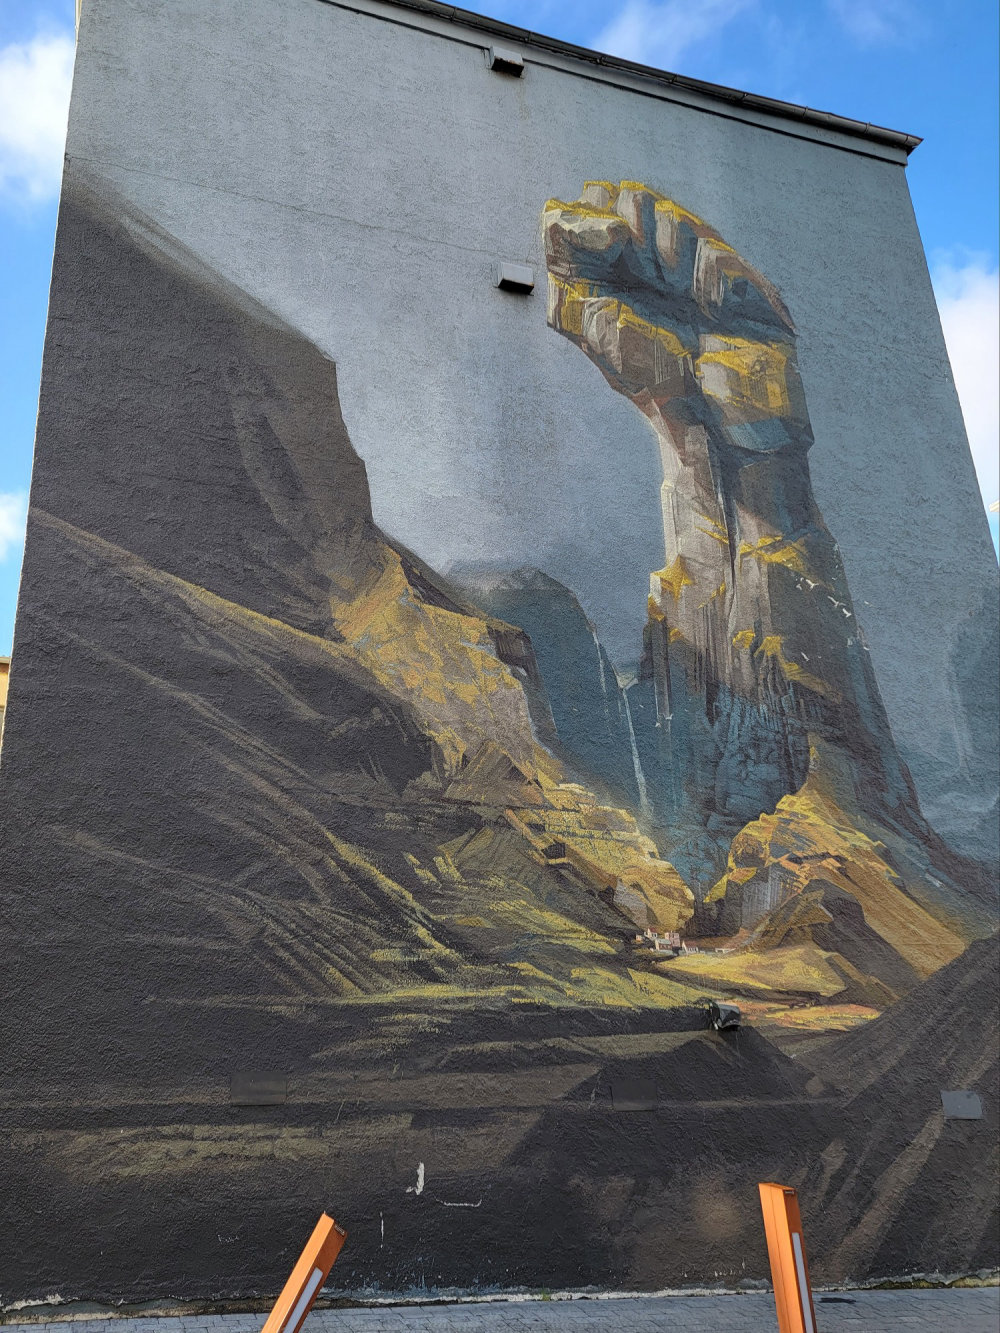 mural in Reykjavík by artist Wes21.